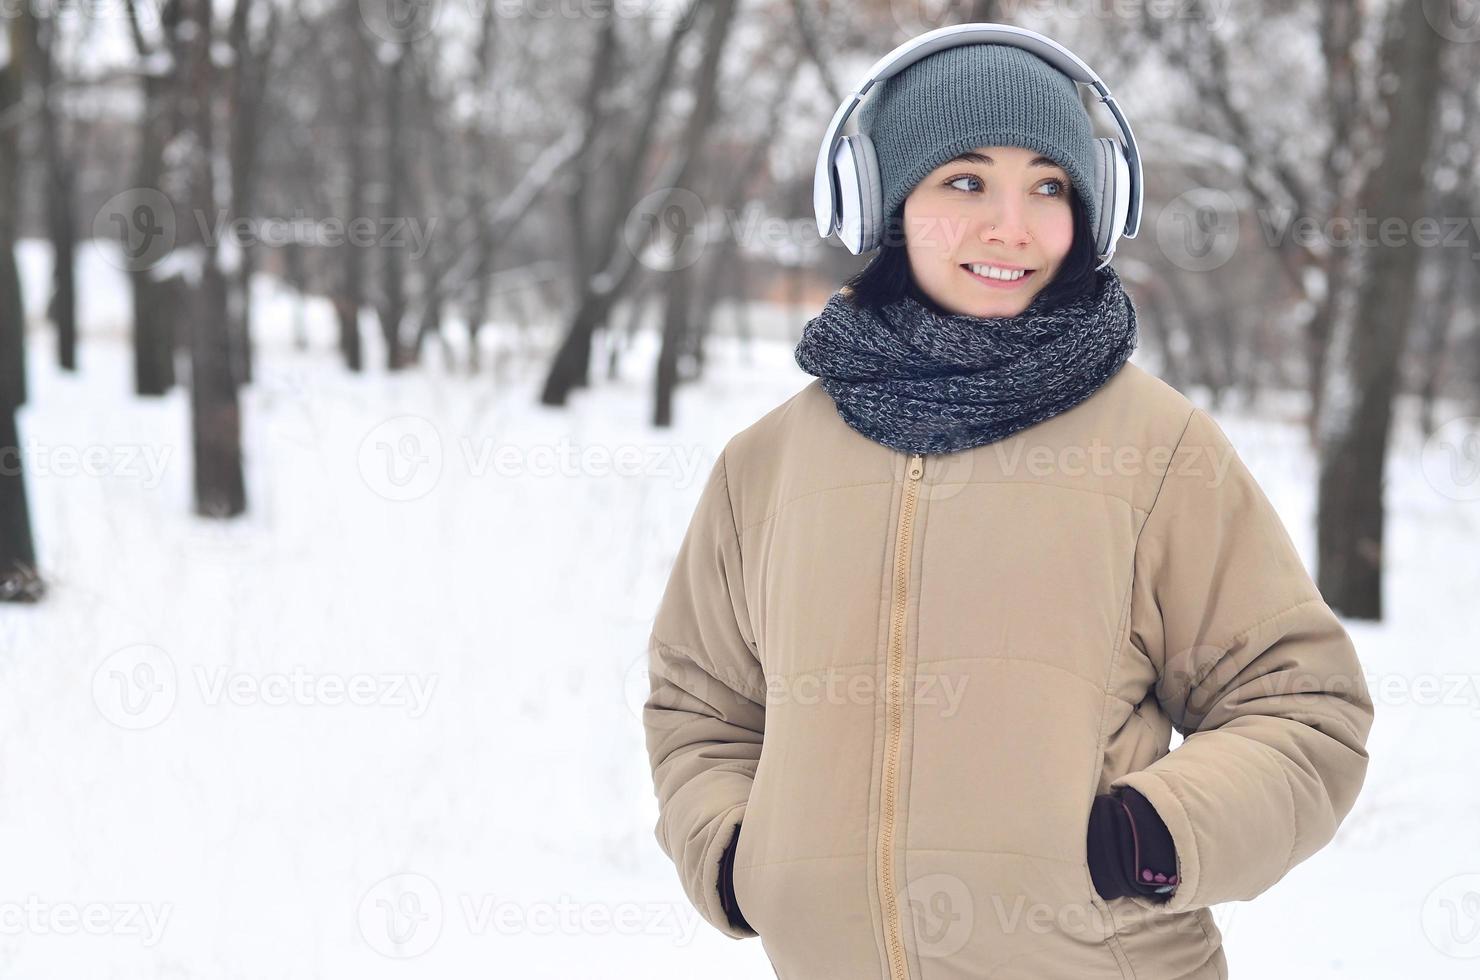 portrait d'hiver de jeune fille avec des écouteurs photo